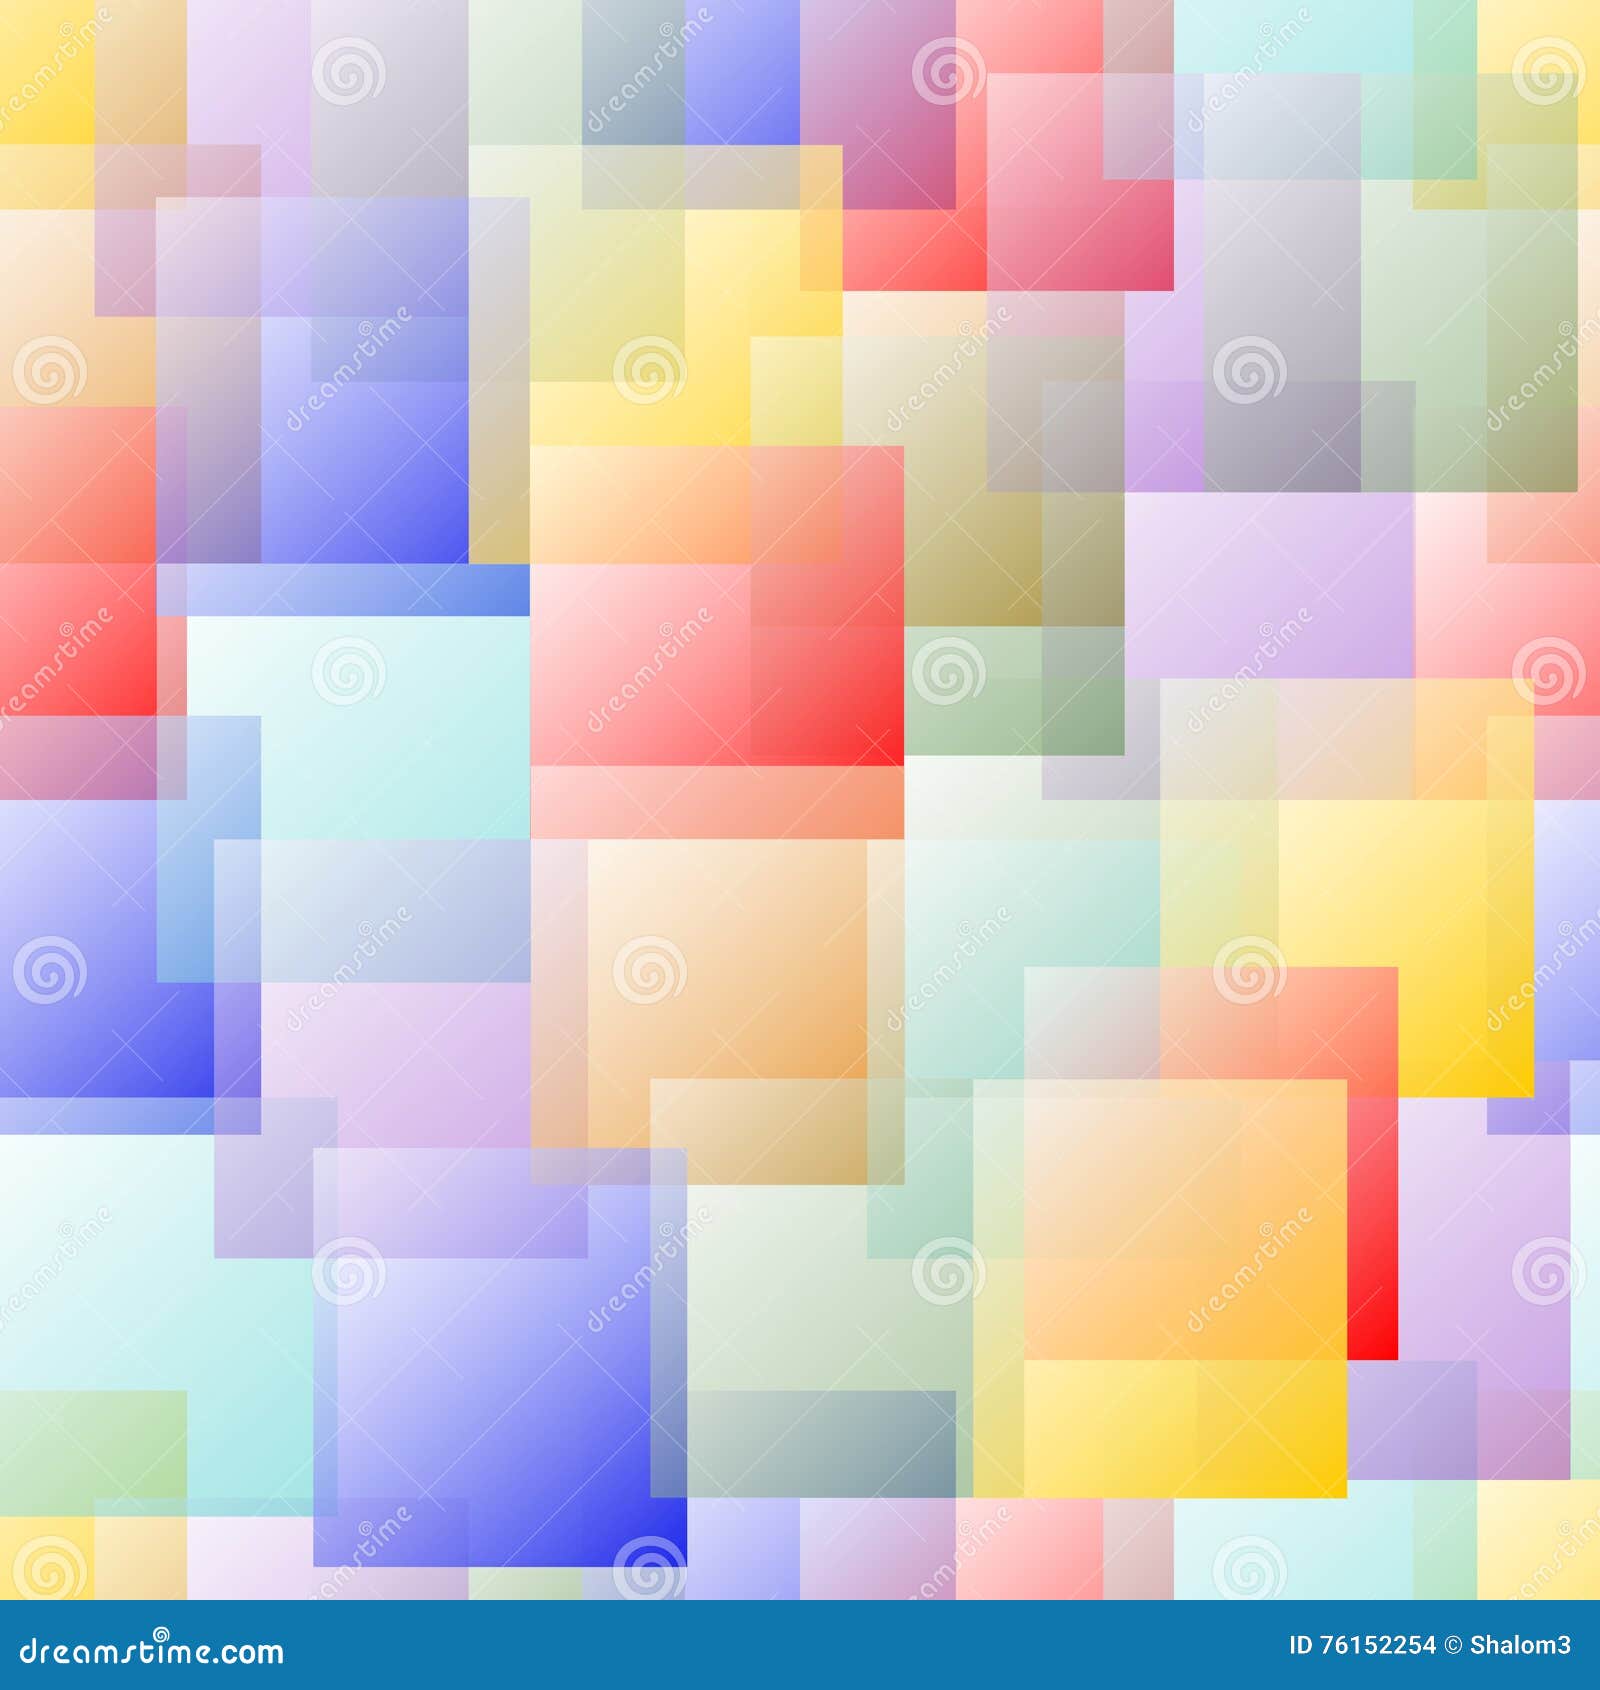 Transparant Overlappend Vierkant Ontwerp in De Kleuren Van De Pastelkleurregenboog Op Witte Achtergrond Vector Illustratie - Illustration of mengen: 76152254